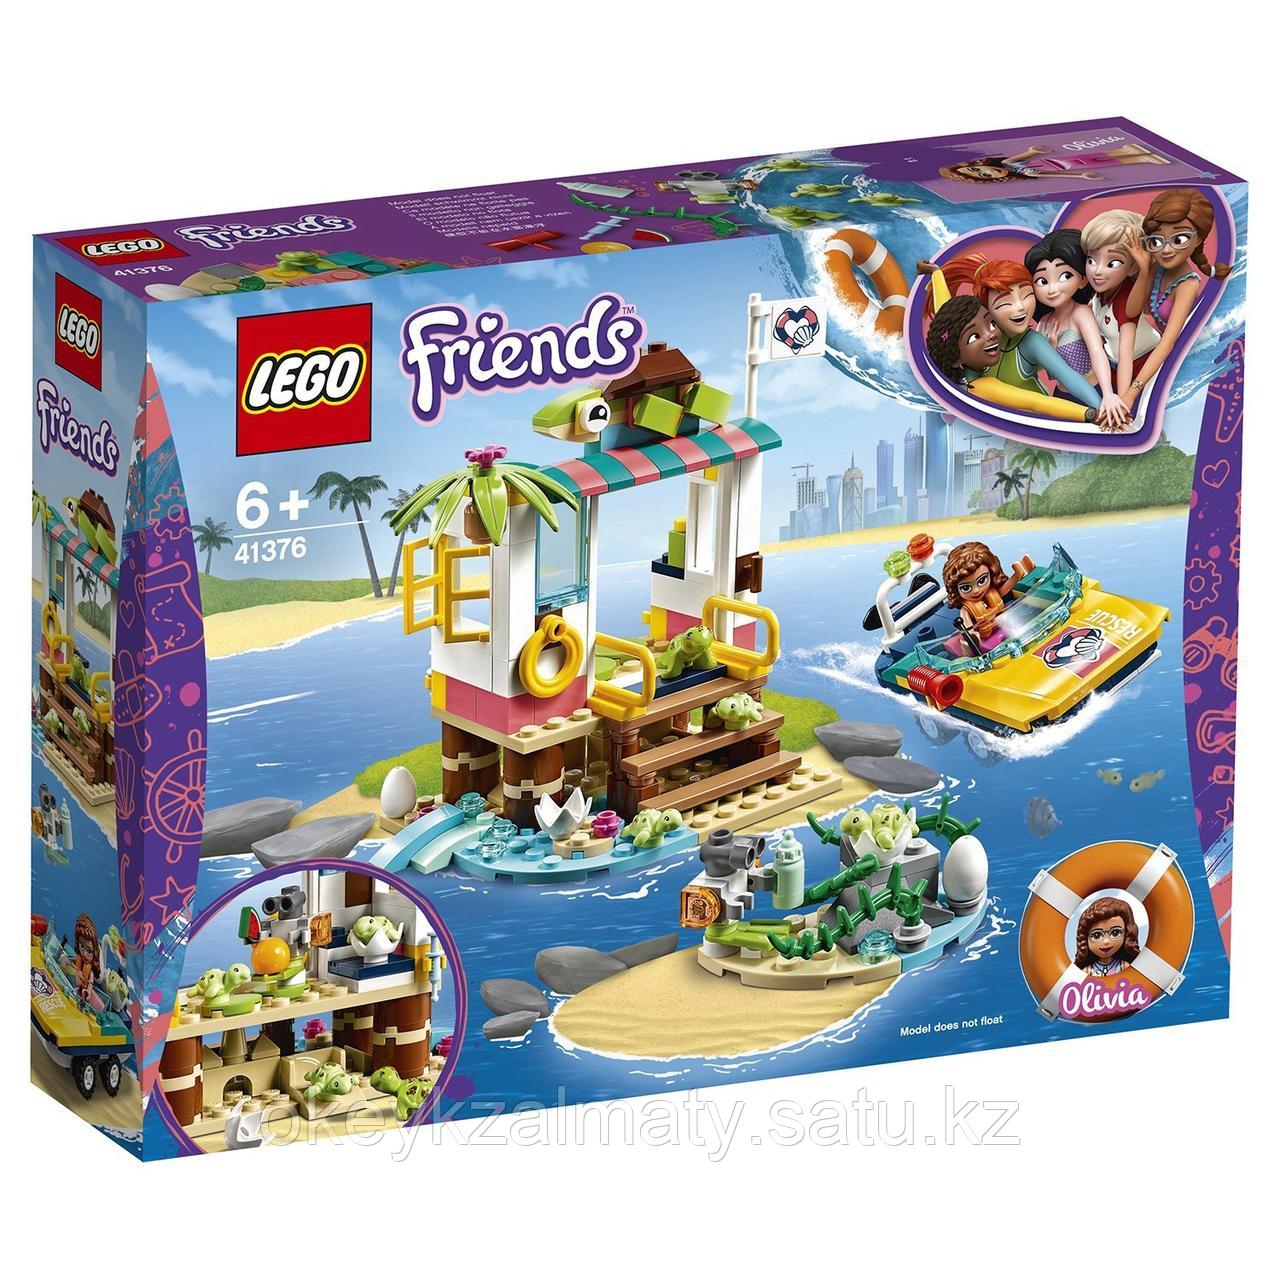 LEGO Friends: Спасение черепах 41376